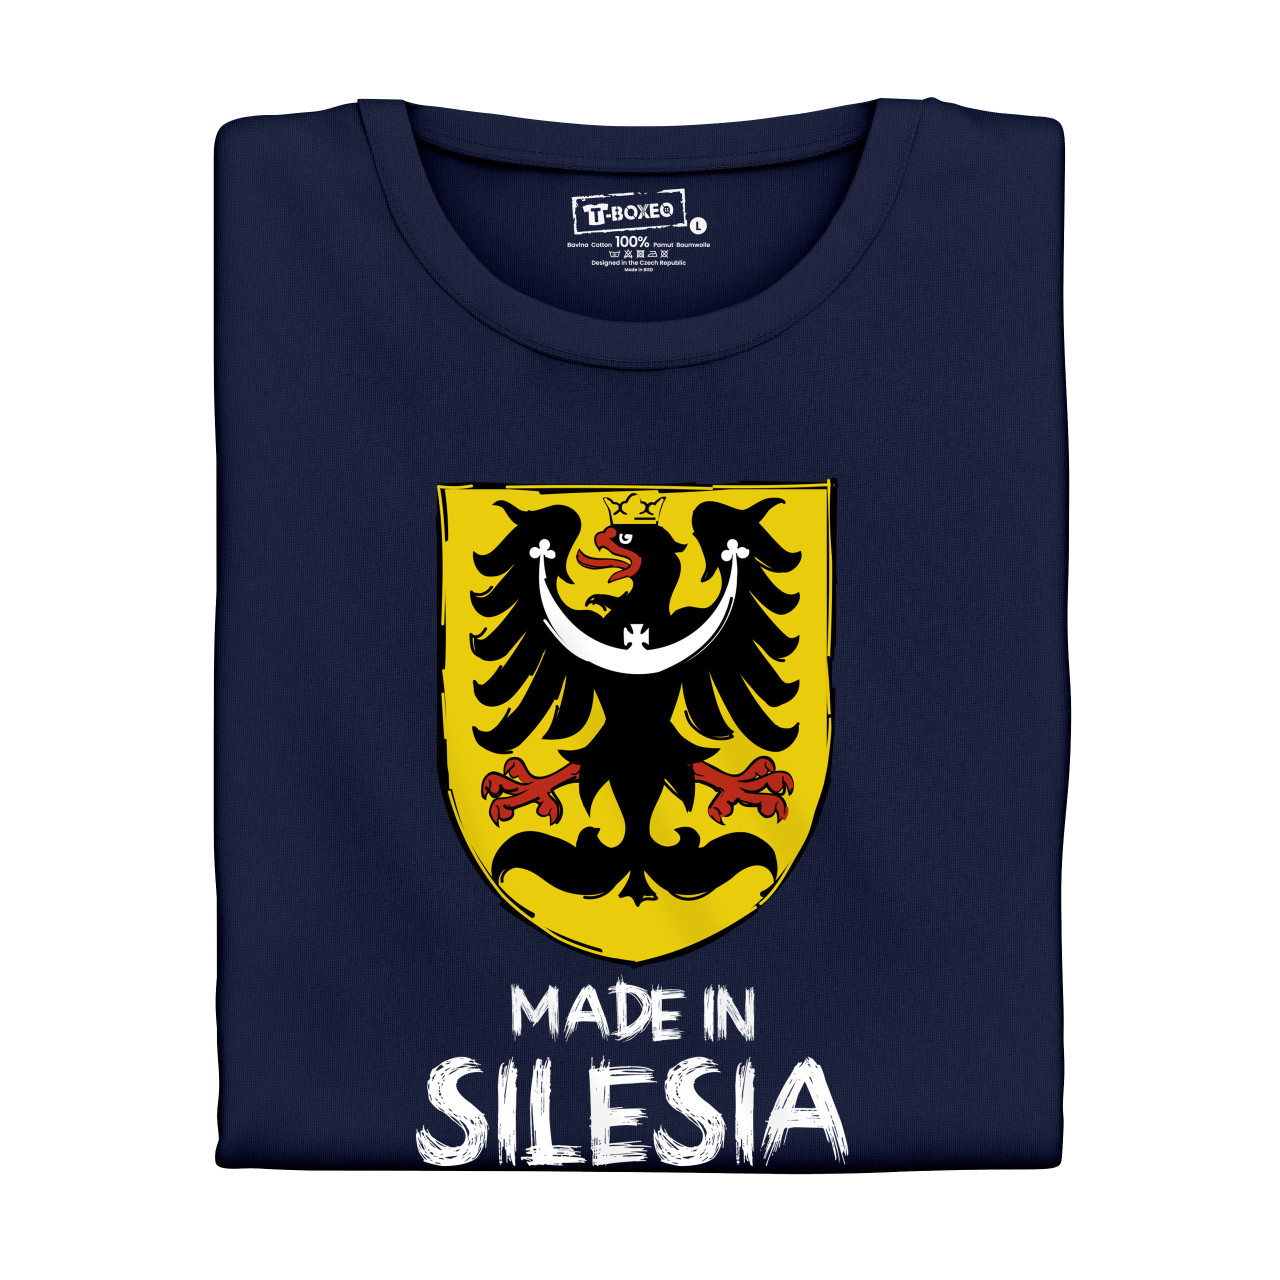 Pánské tričko s potiskem “Made in Silesia”